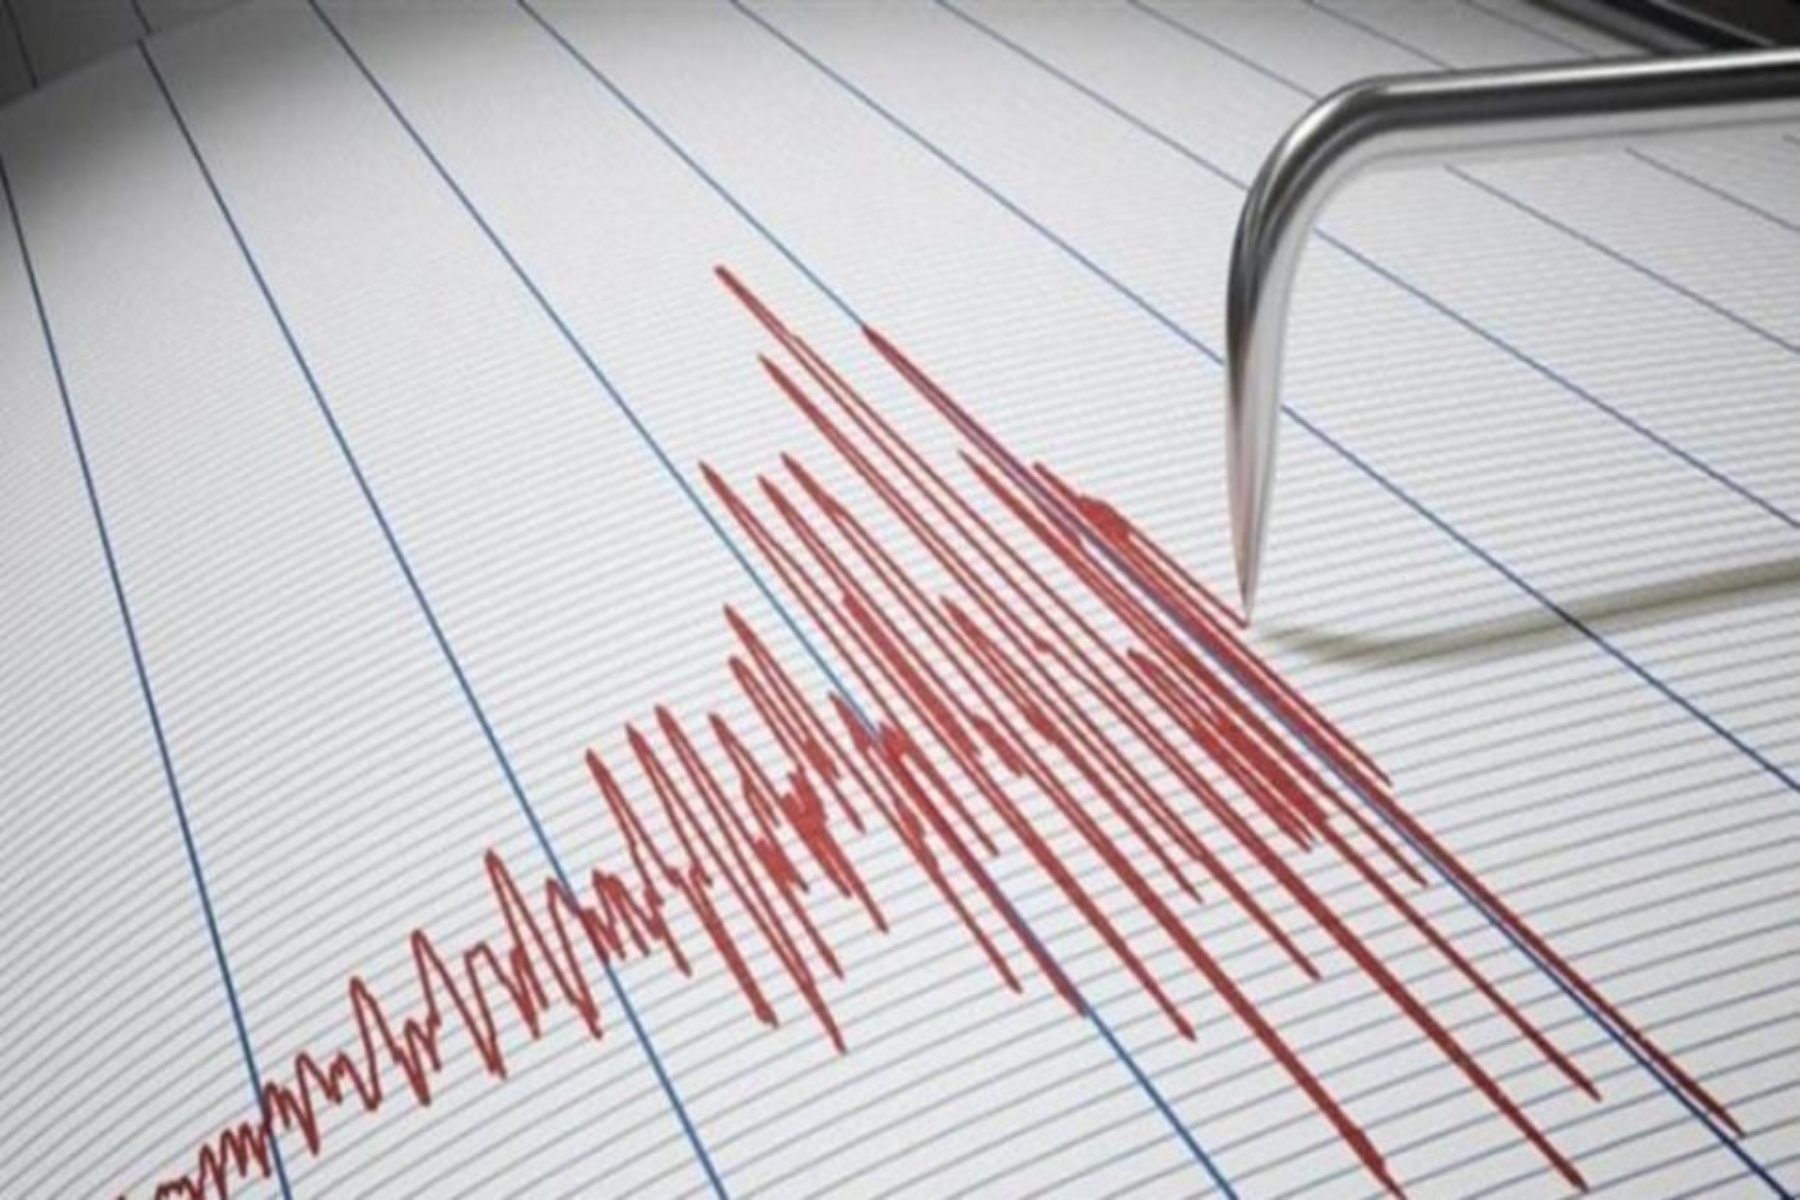 Σεισμός τώρα: Νέα σεισμική δόνηση 4,1 ρίχτερ στην Αταλάντη